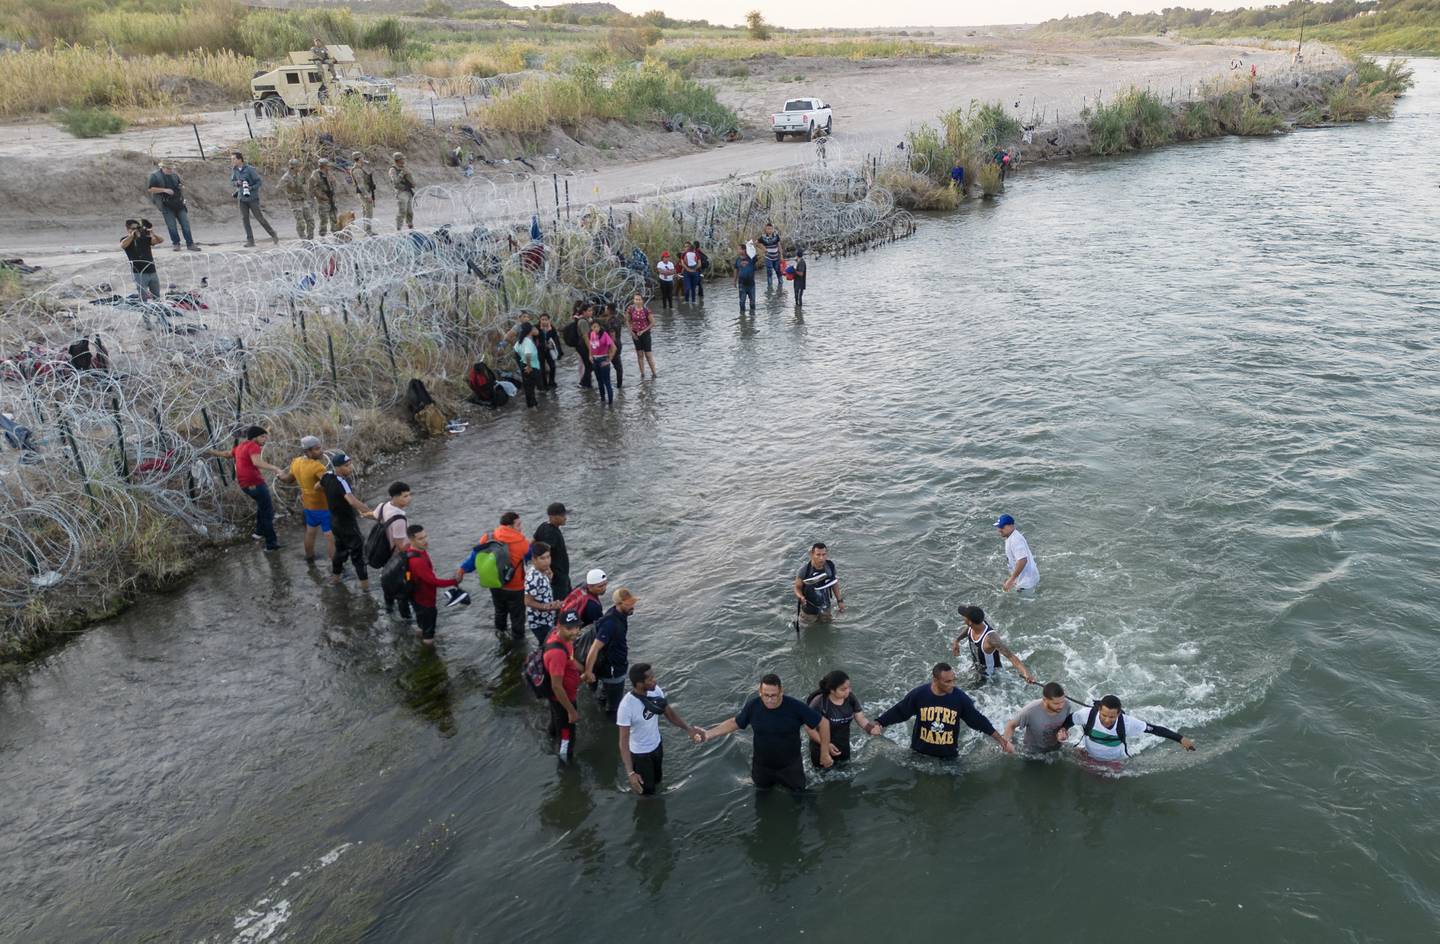 Docenas de migrantes llegaron a la frontera entre Estados Unidos y México el 22 de septiembre, con la esperanza de que se les permitiera ingresar a los Estados Unidos, con las fuerzas fronterizas estadounidenses. reportando 1,8 millones de encuentros con migrantes en los últimos 12 meses.